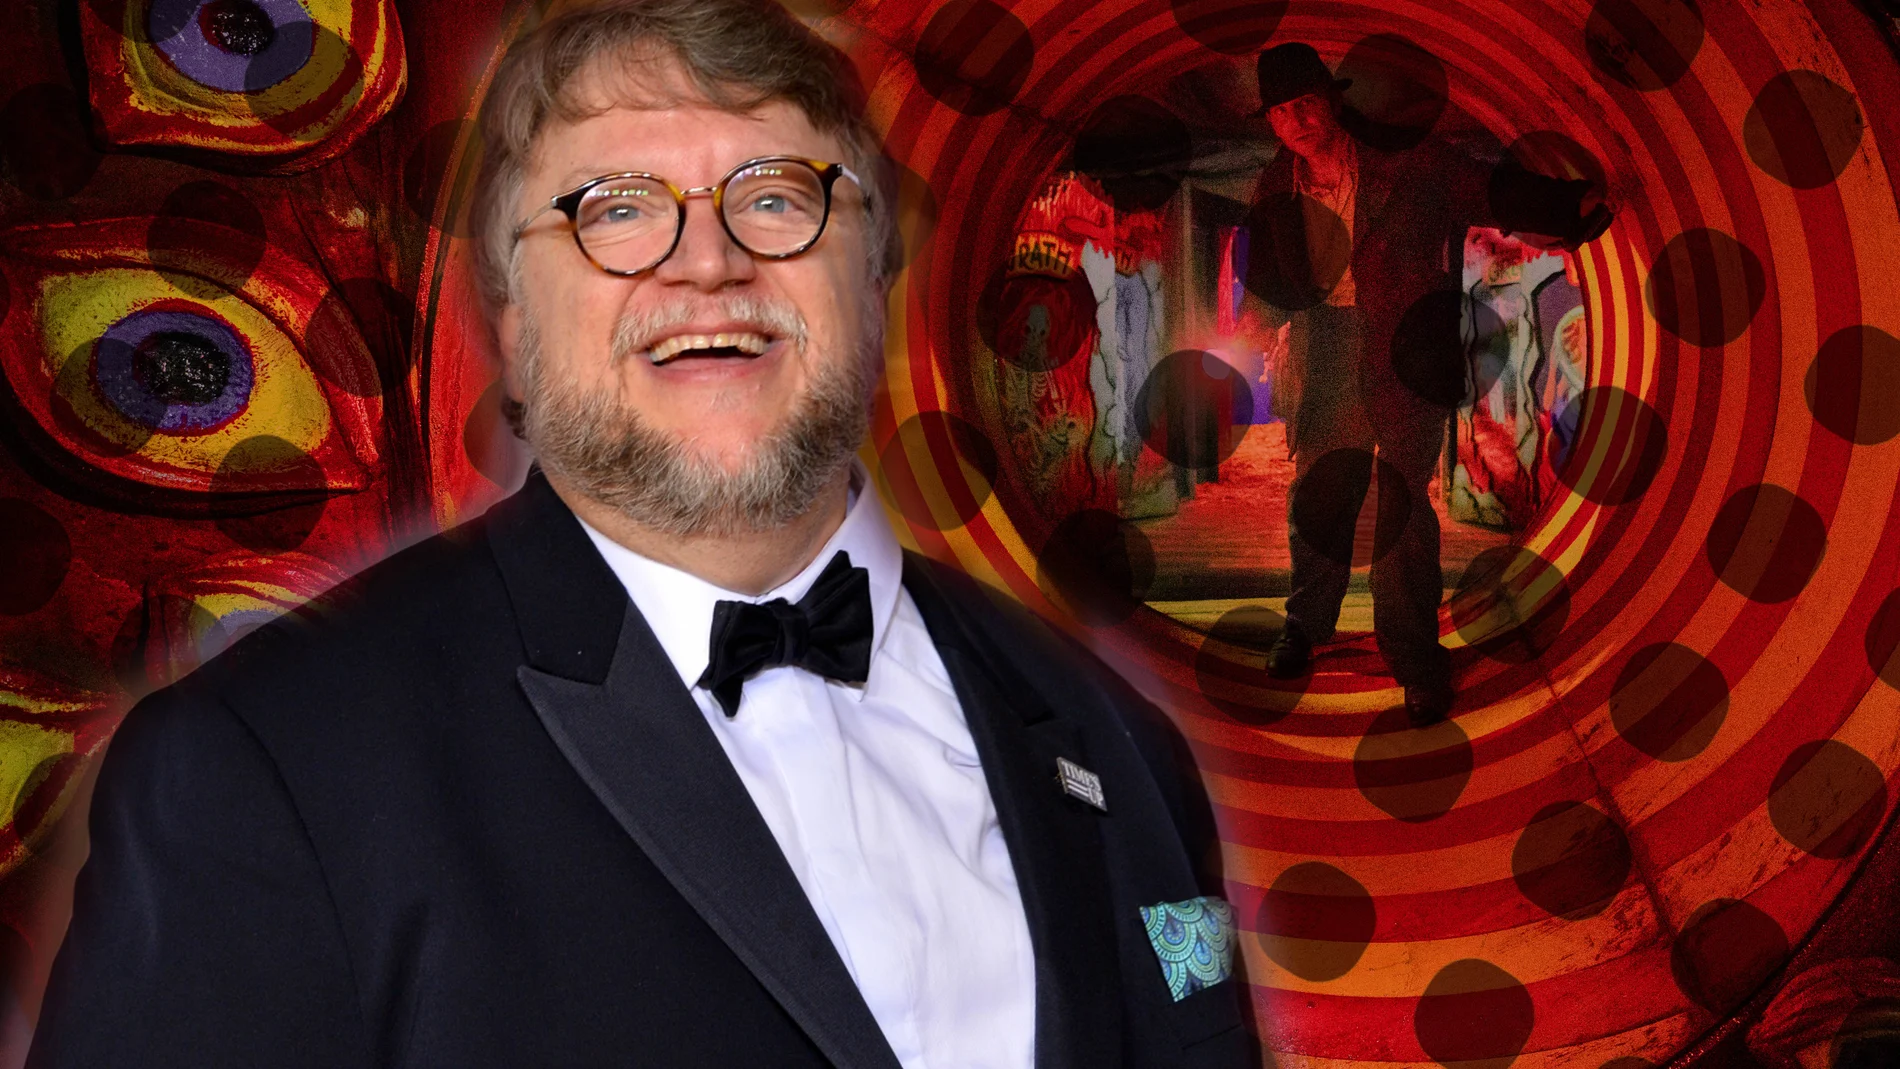 Guillermo del Toro dirige a Bradley Cooper en "El callejón de las almas perdidas", que se estrena este viernes © 2021 20th Century Studios All Rights Reserved